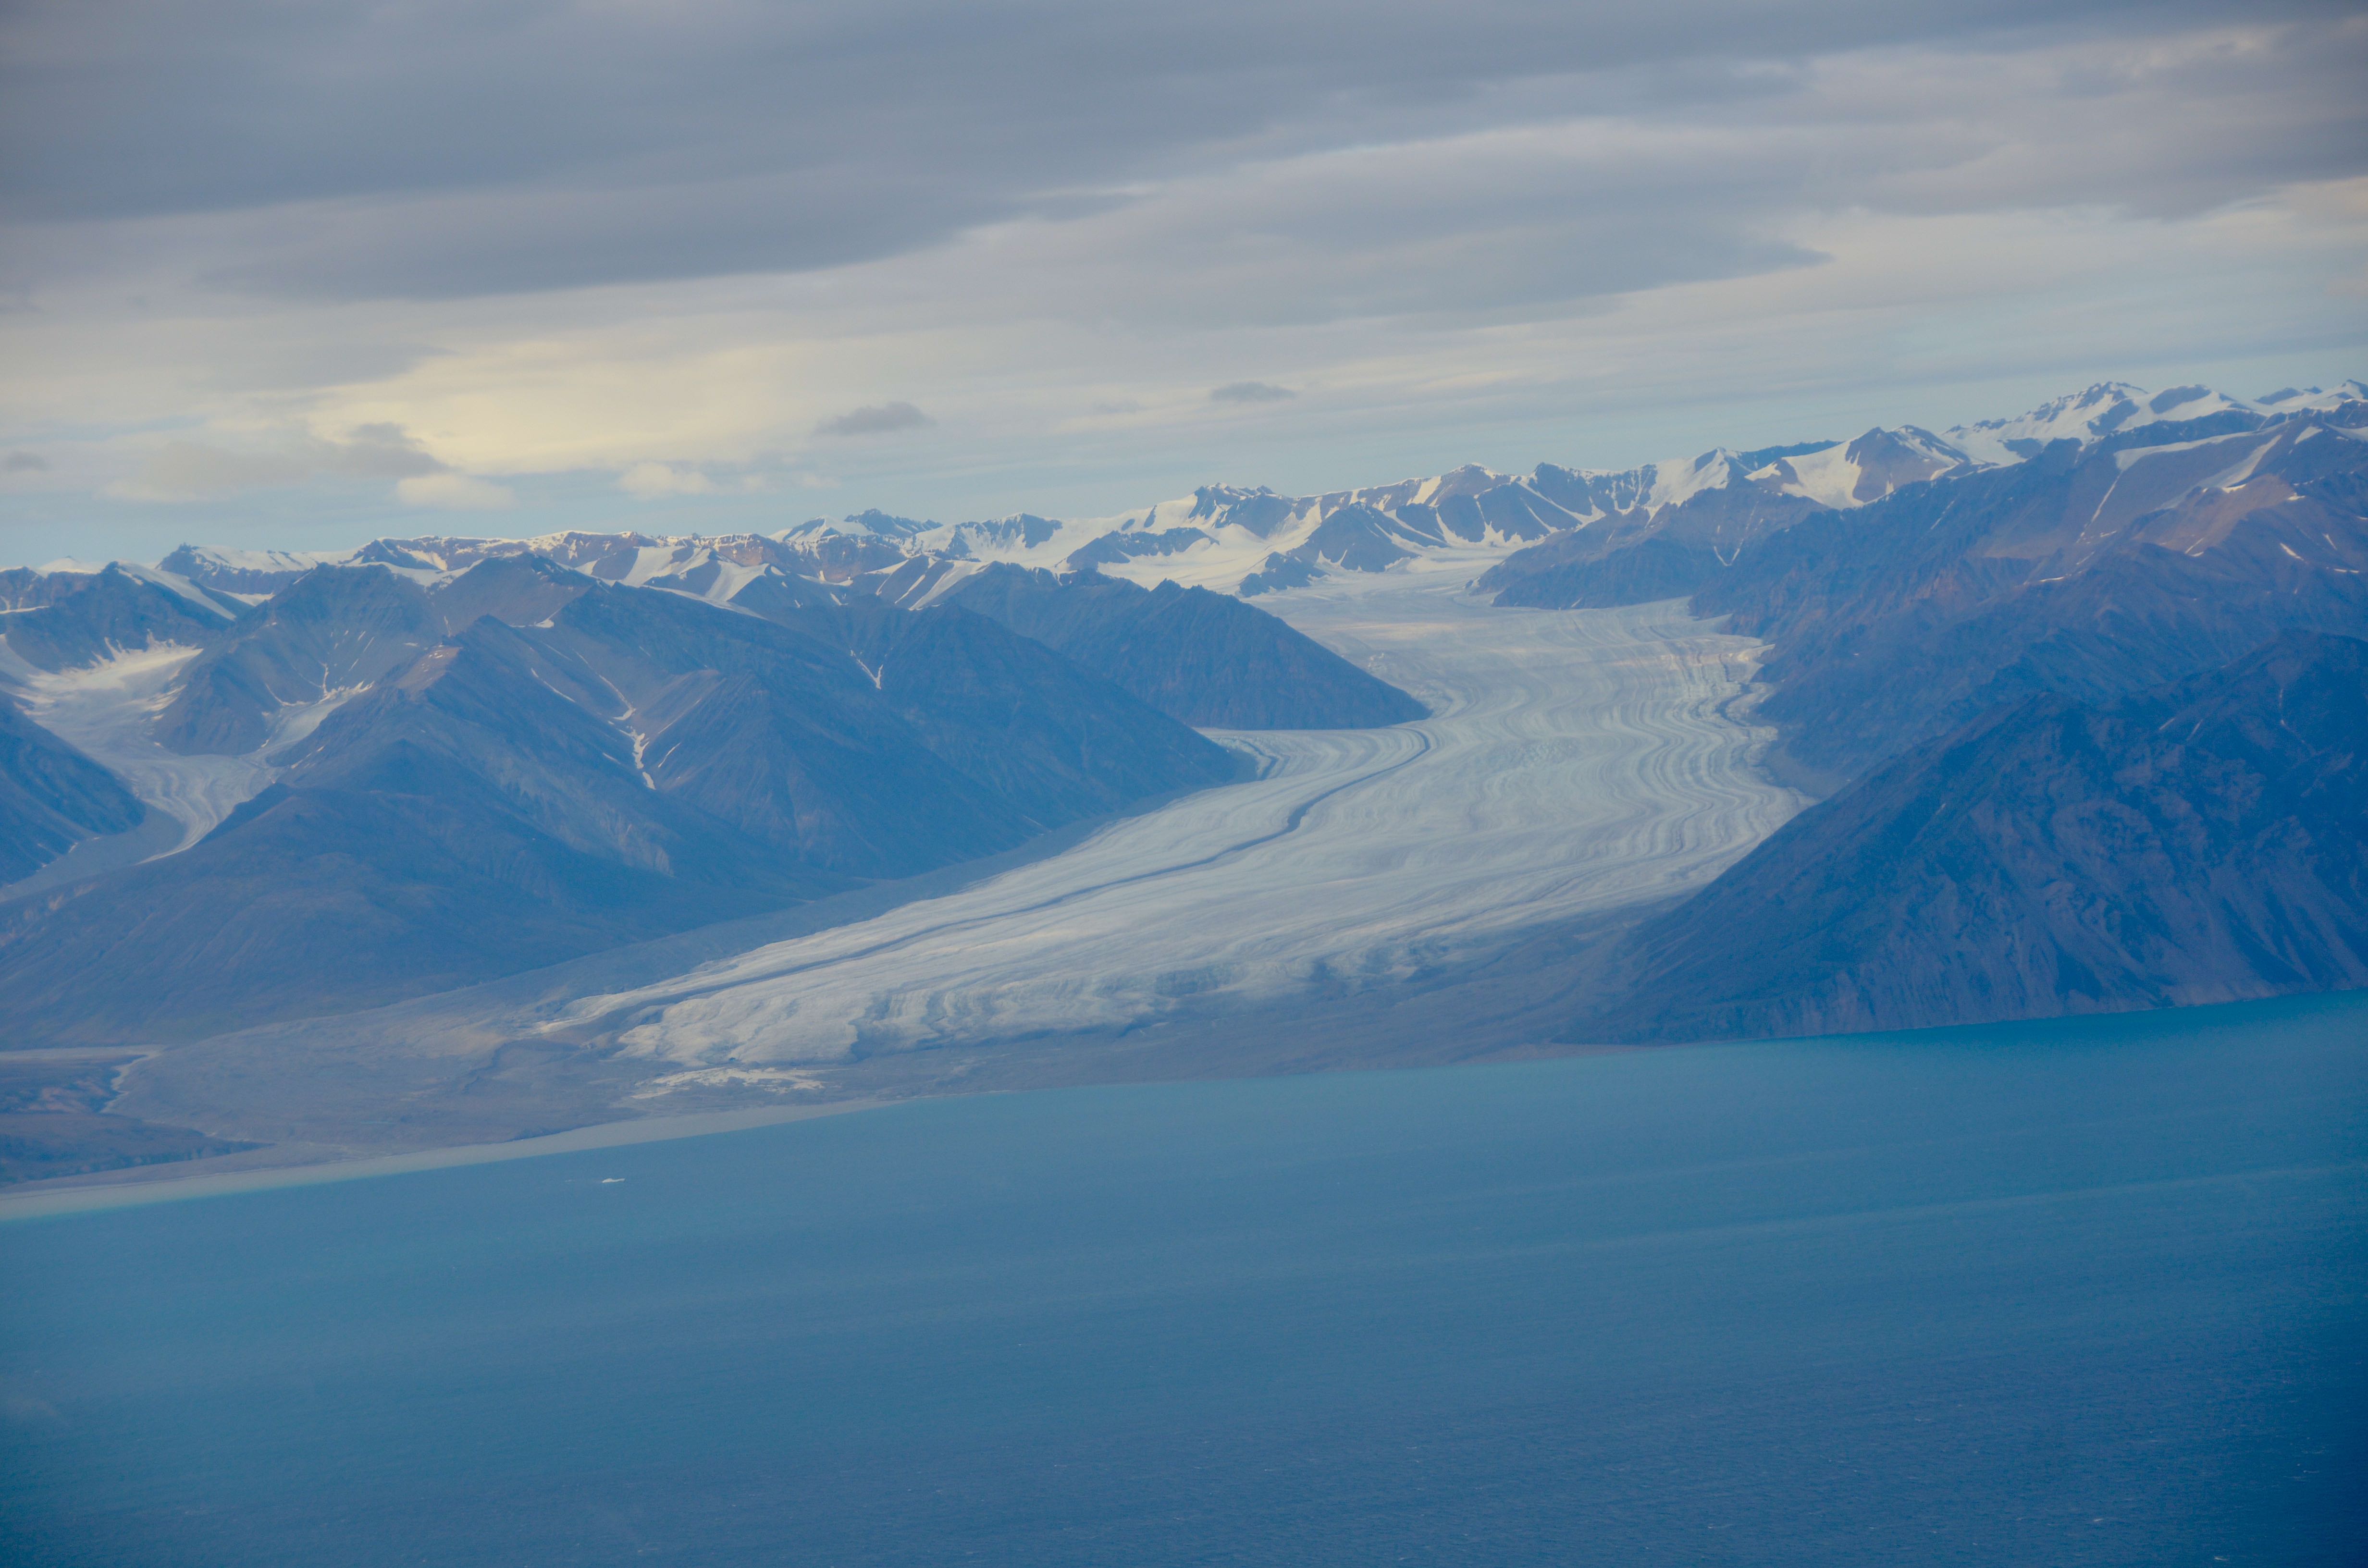 Gletsjer gezien vanuit de lucht nabij Pond Inlet, vastgelegd tijdens een reis van een maand op Mars op weg naar Arctic Bay.